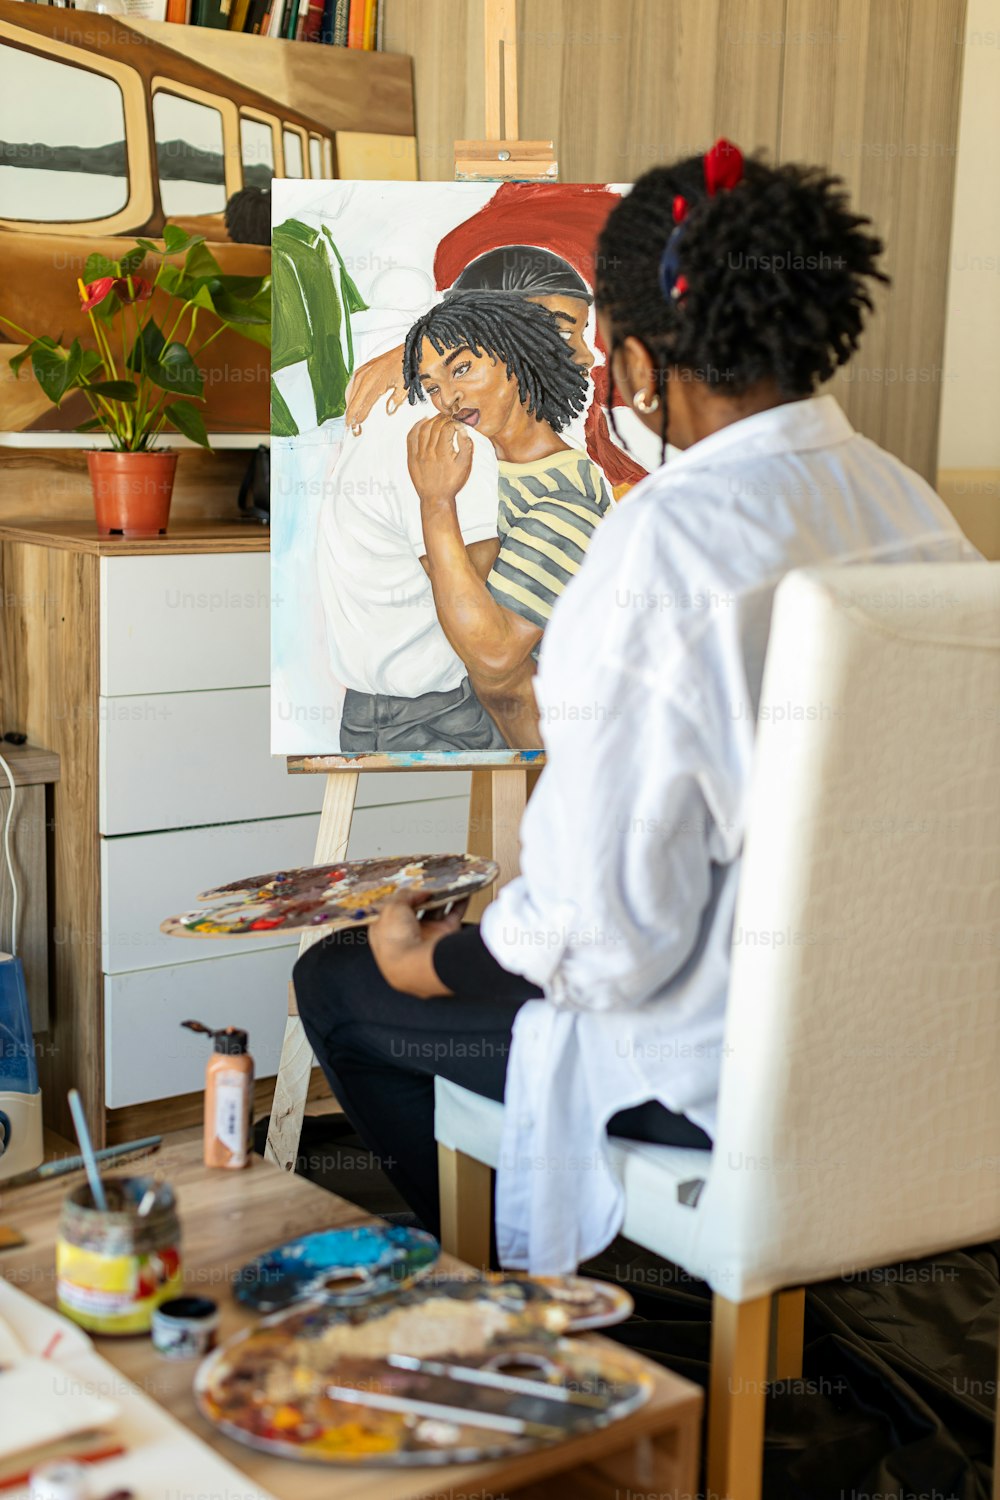 Una mujer sentada en una silla frente a un cuadro